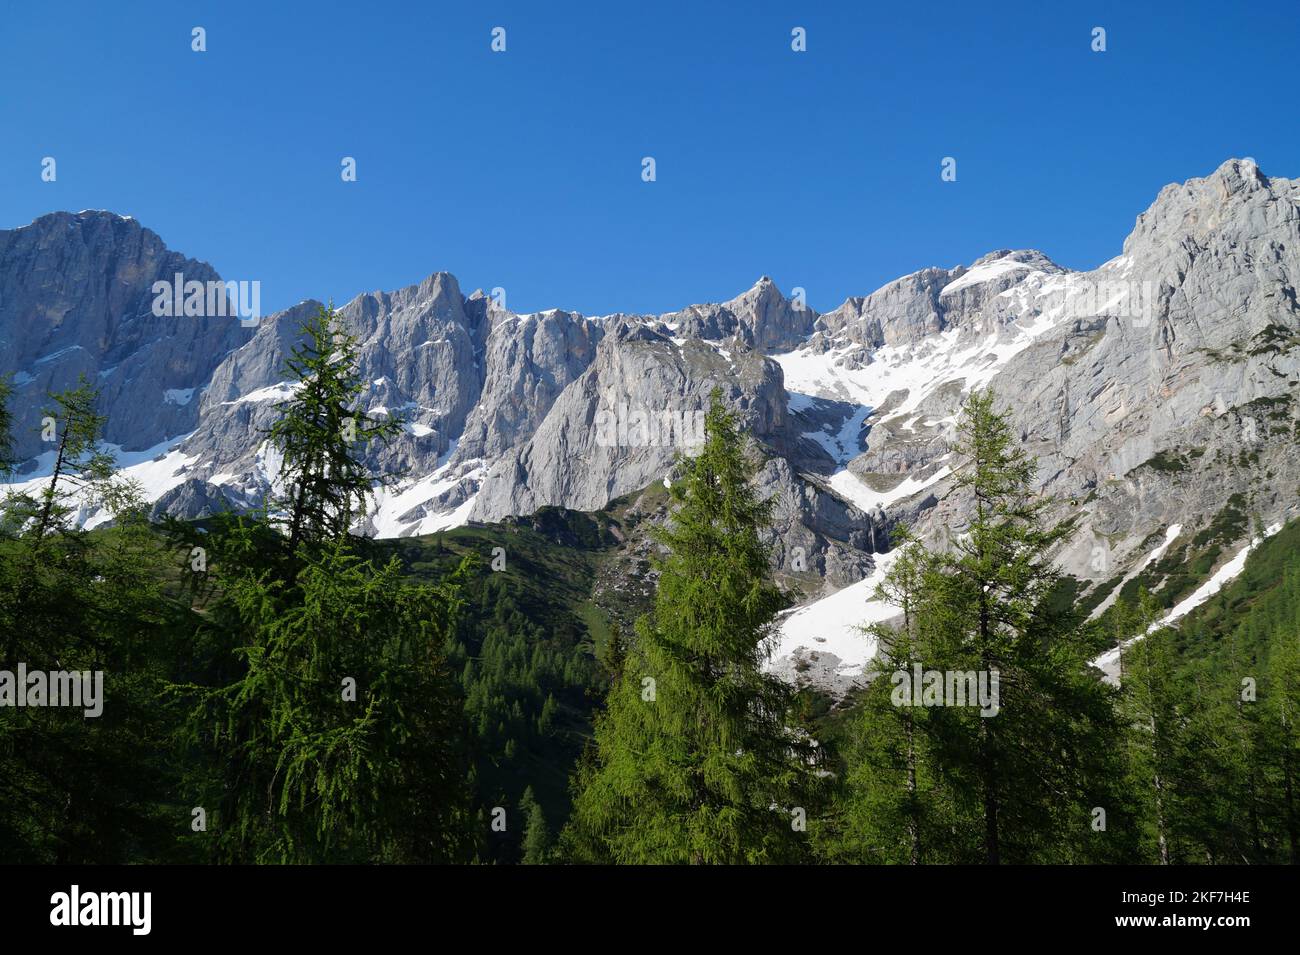 Paesaggio alpino verdeggiante e paesaggistico con splendidi alberi e Alpi innevate della regione di Dachstein-Schladming in Austria (Schladming, Steiermark o Stiria Foto Stock